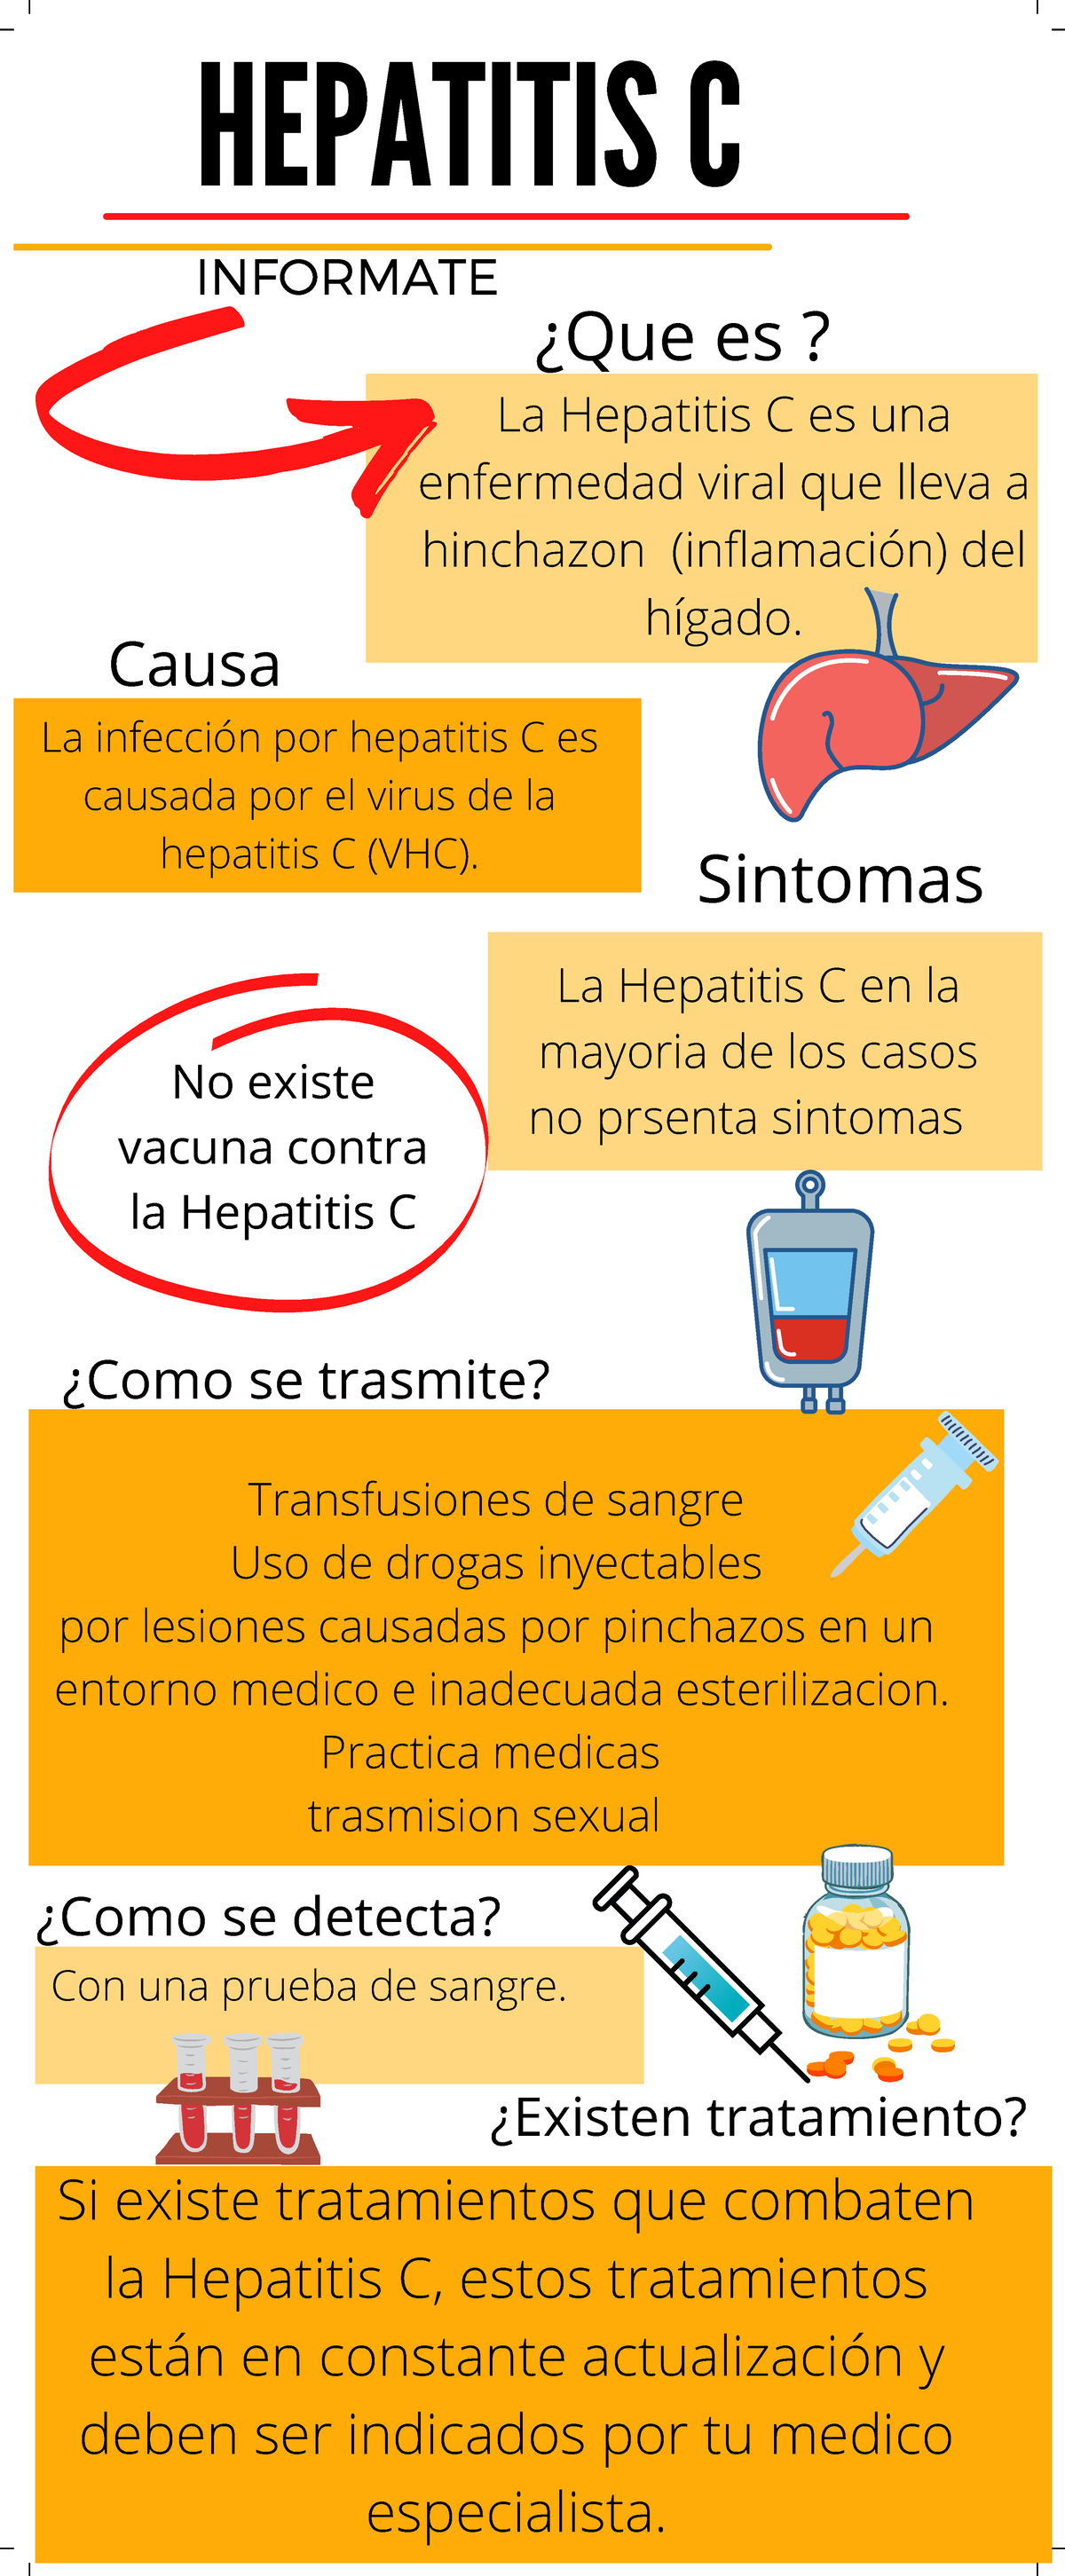 Infografia Hepatitis cronica lea - HEPATITIS C ####### INFORMATE ¿Que es?  La Hepatitis C es una - Studocu